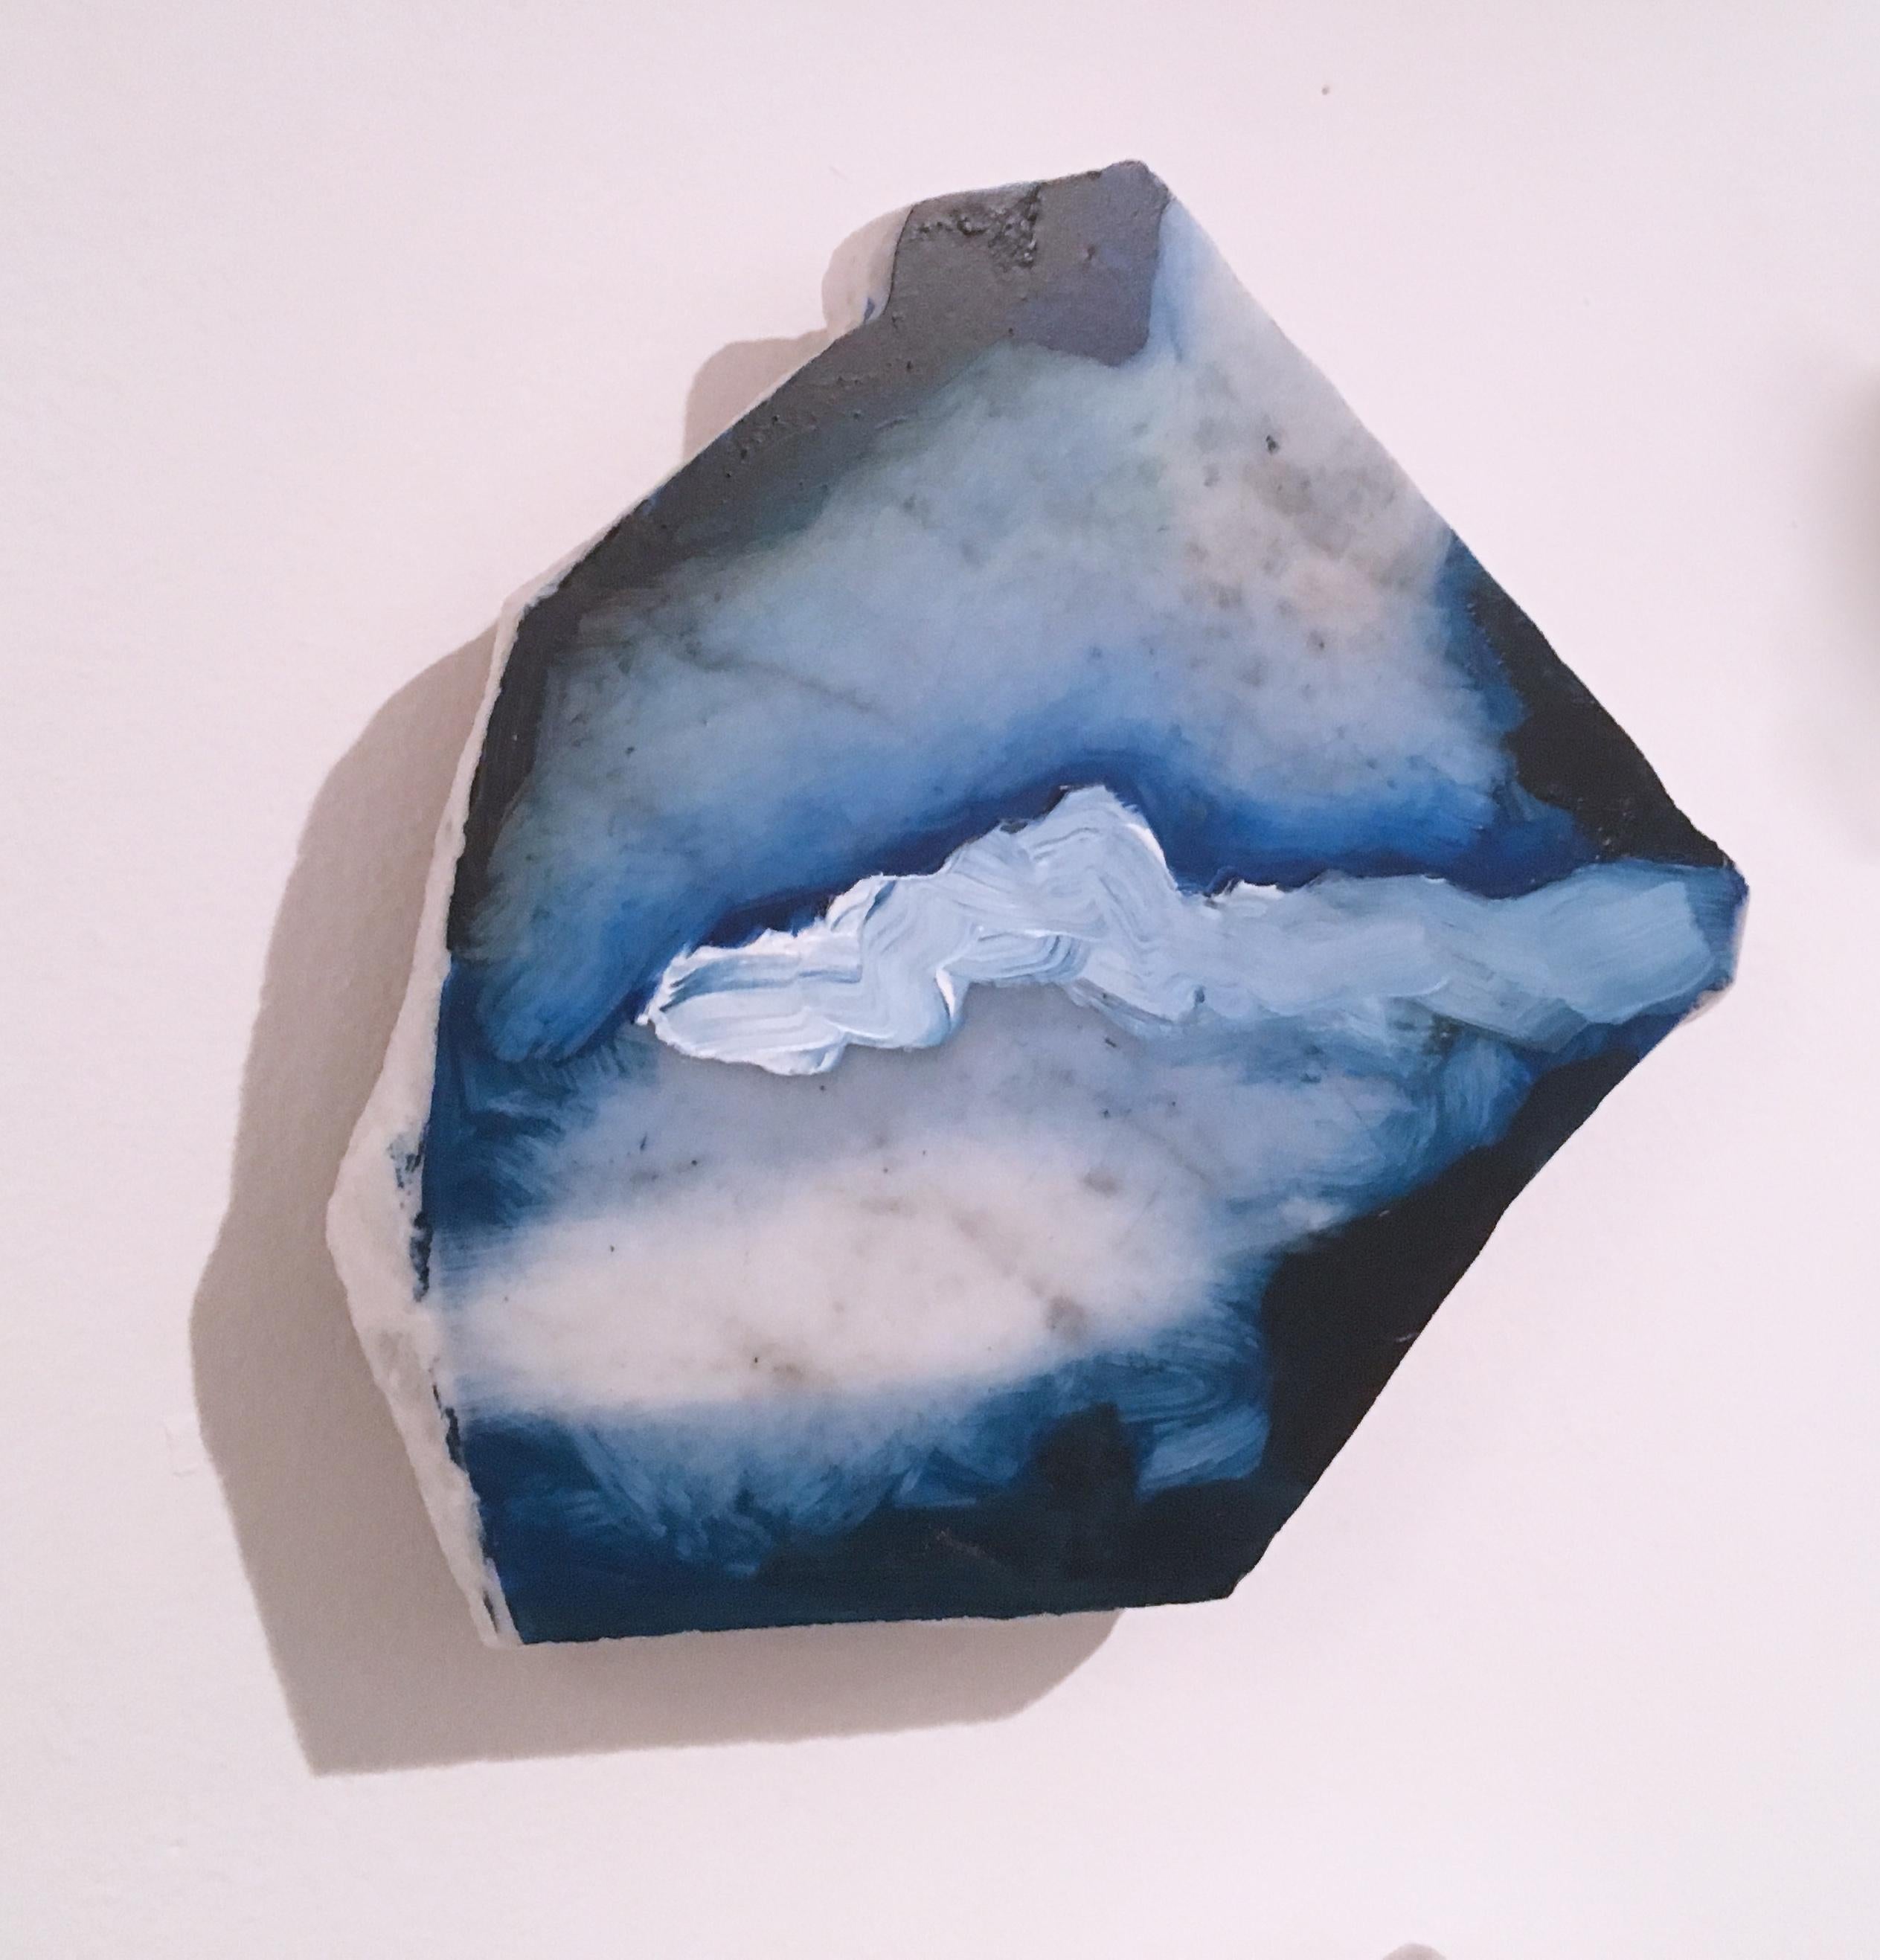 Sans titre « Marble Fragment 3 » 2019, acrylique, paysage, sculpture murale, nuages - Sculpture de Tom Banks